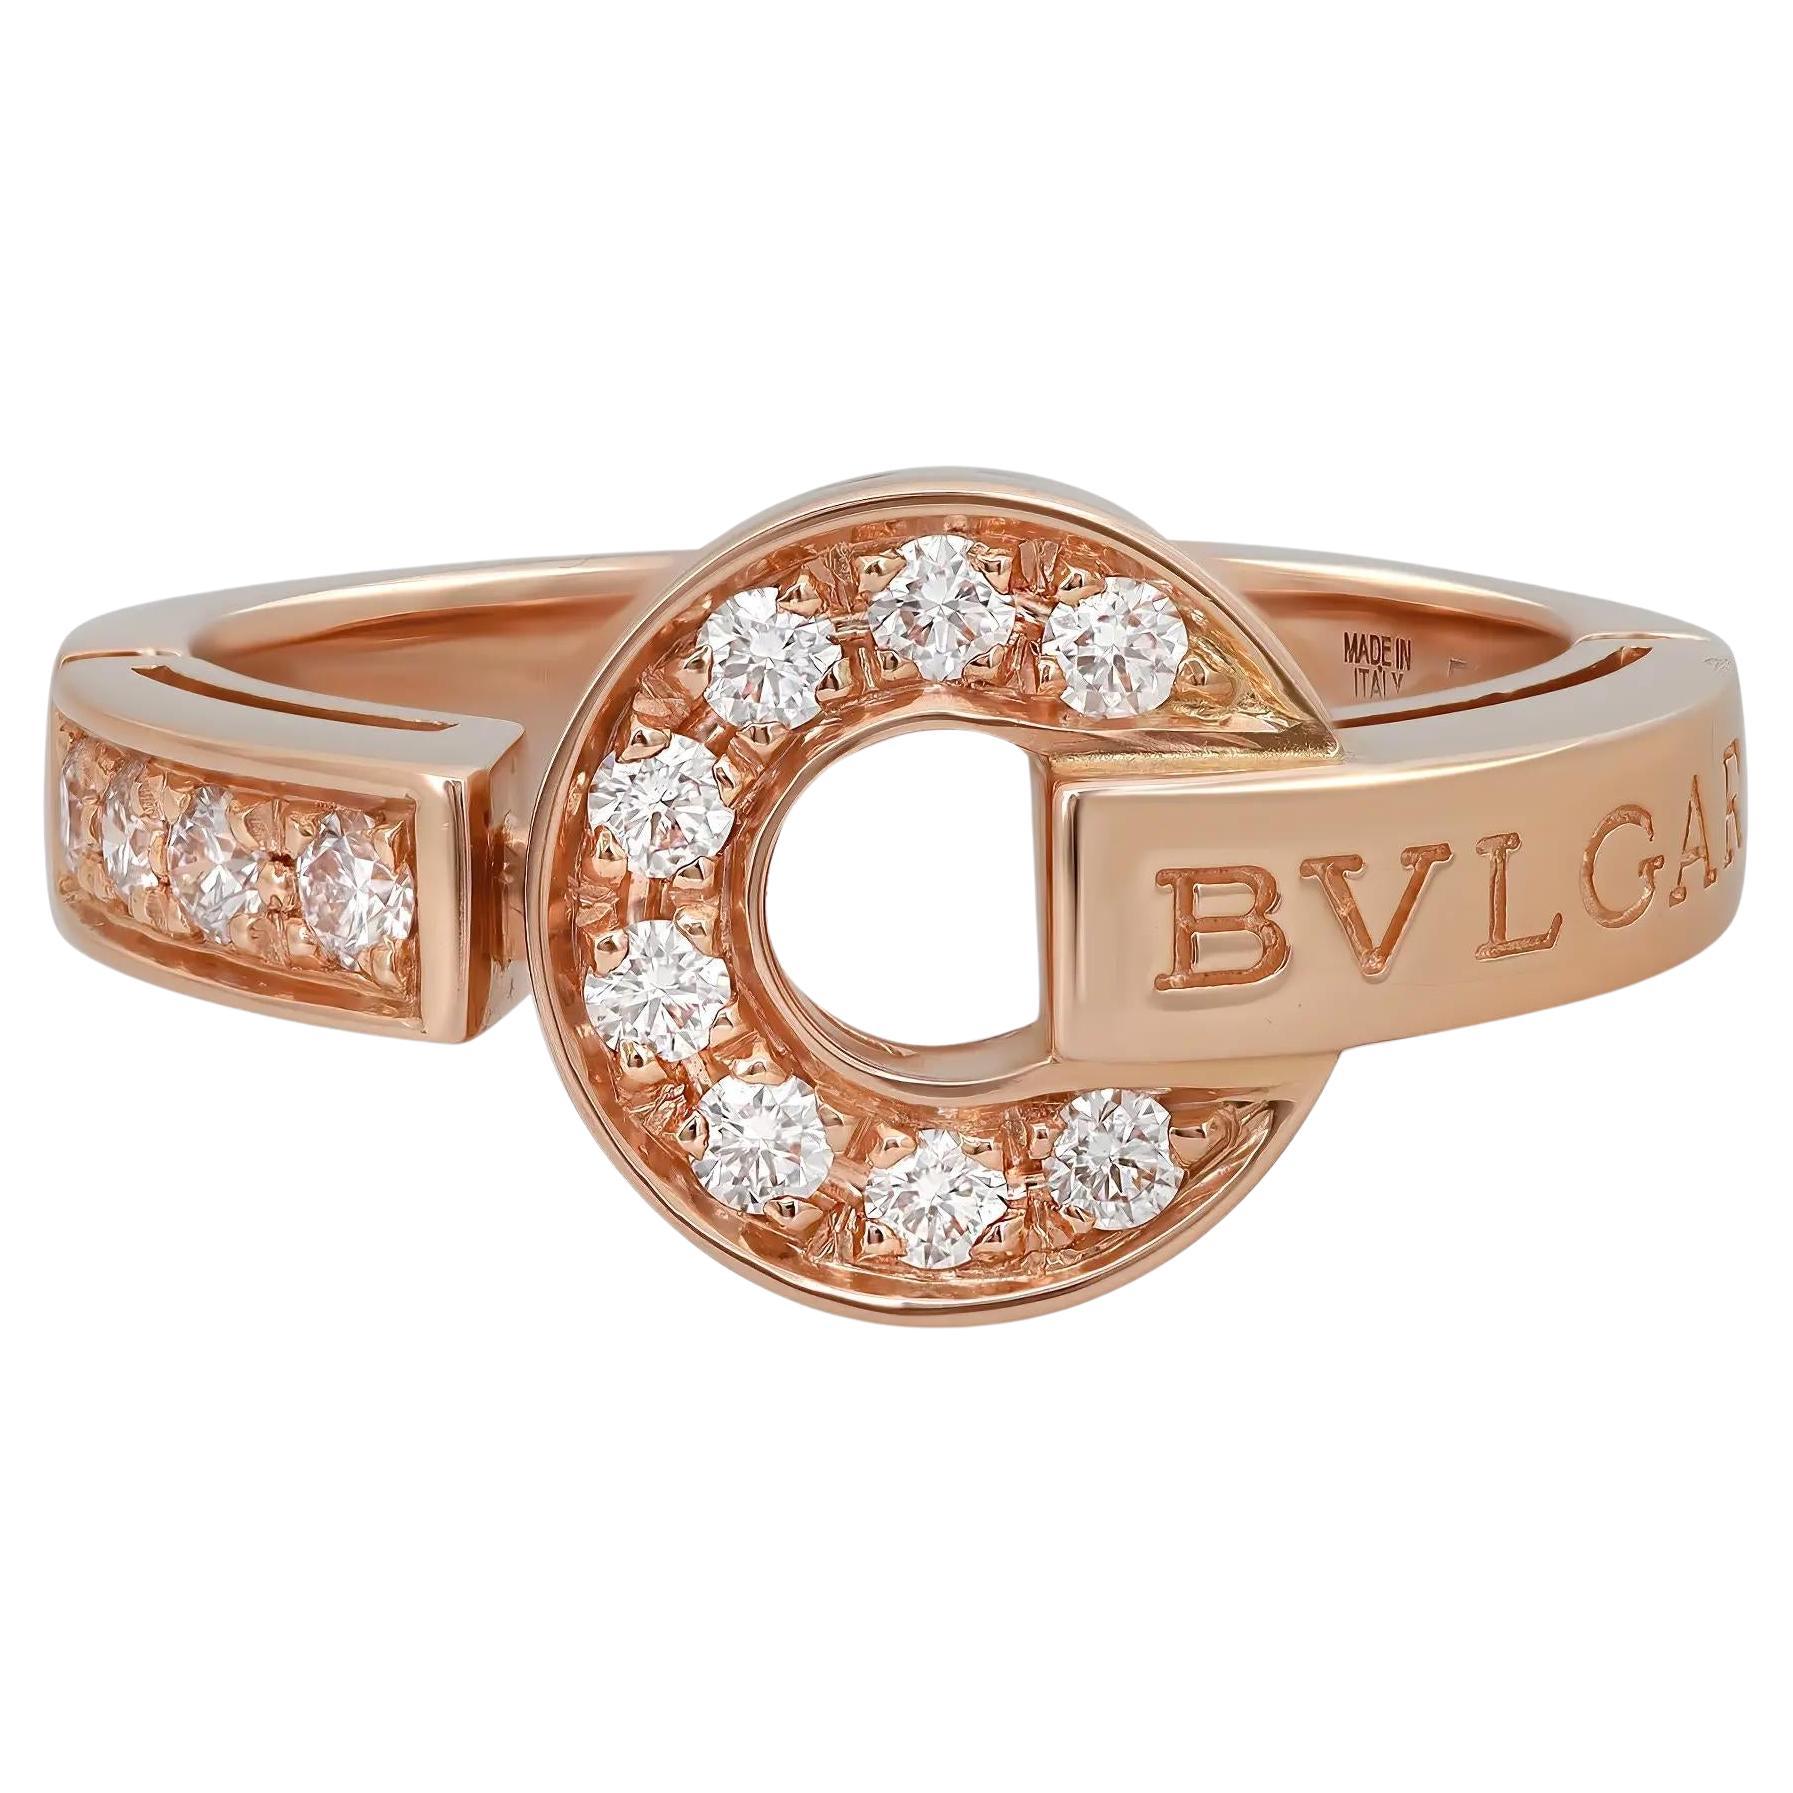 Bvlgari Bvlgari Diamond Ring 18K Rose Gold Size 53 US 6.5 For Sale